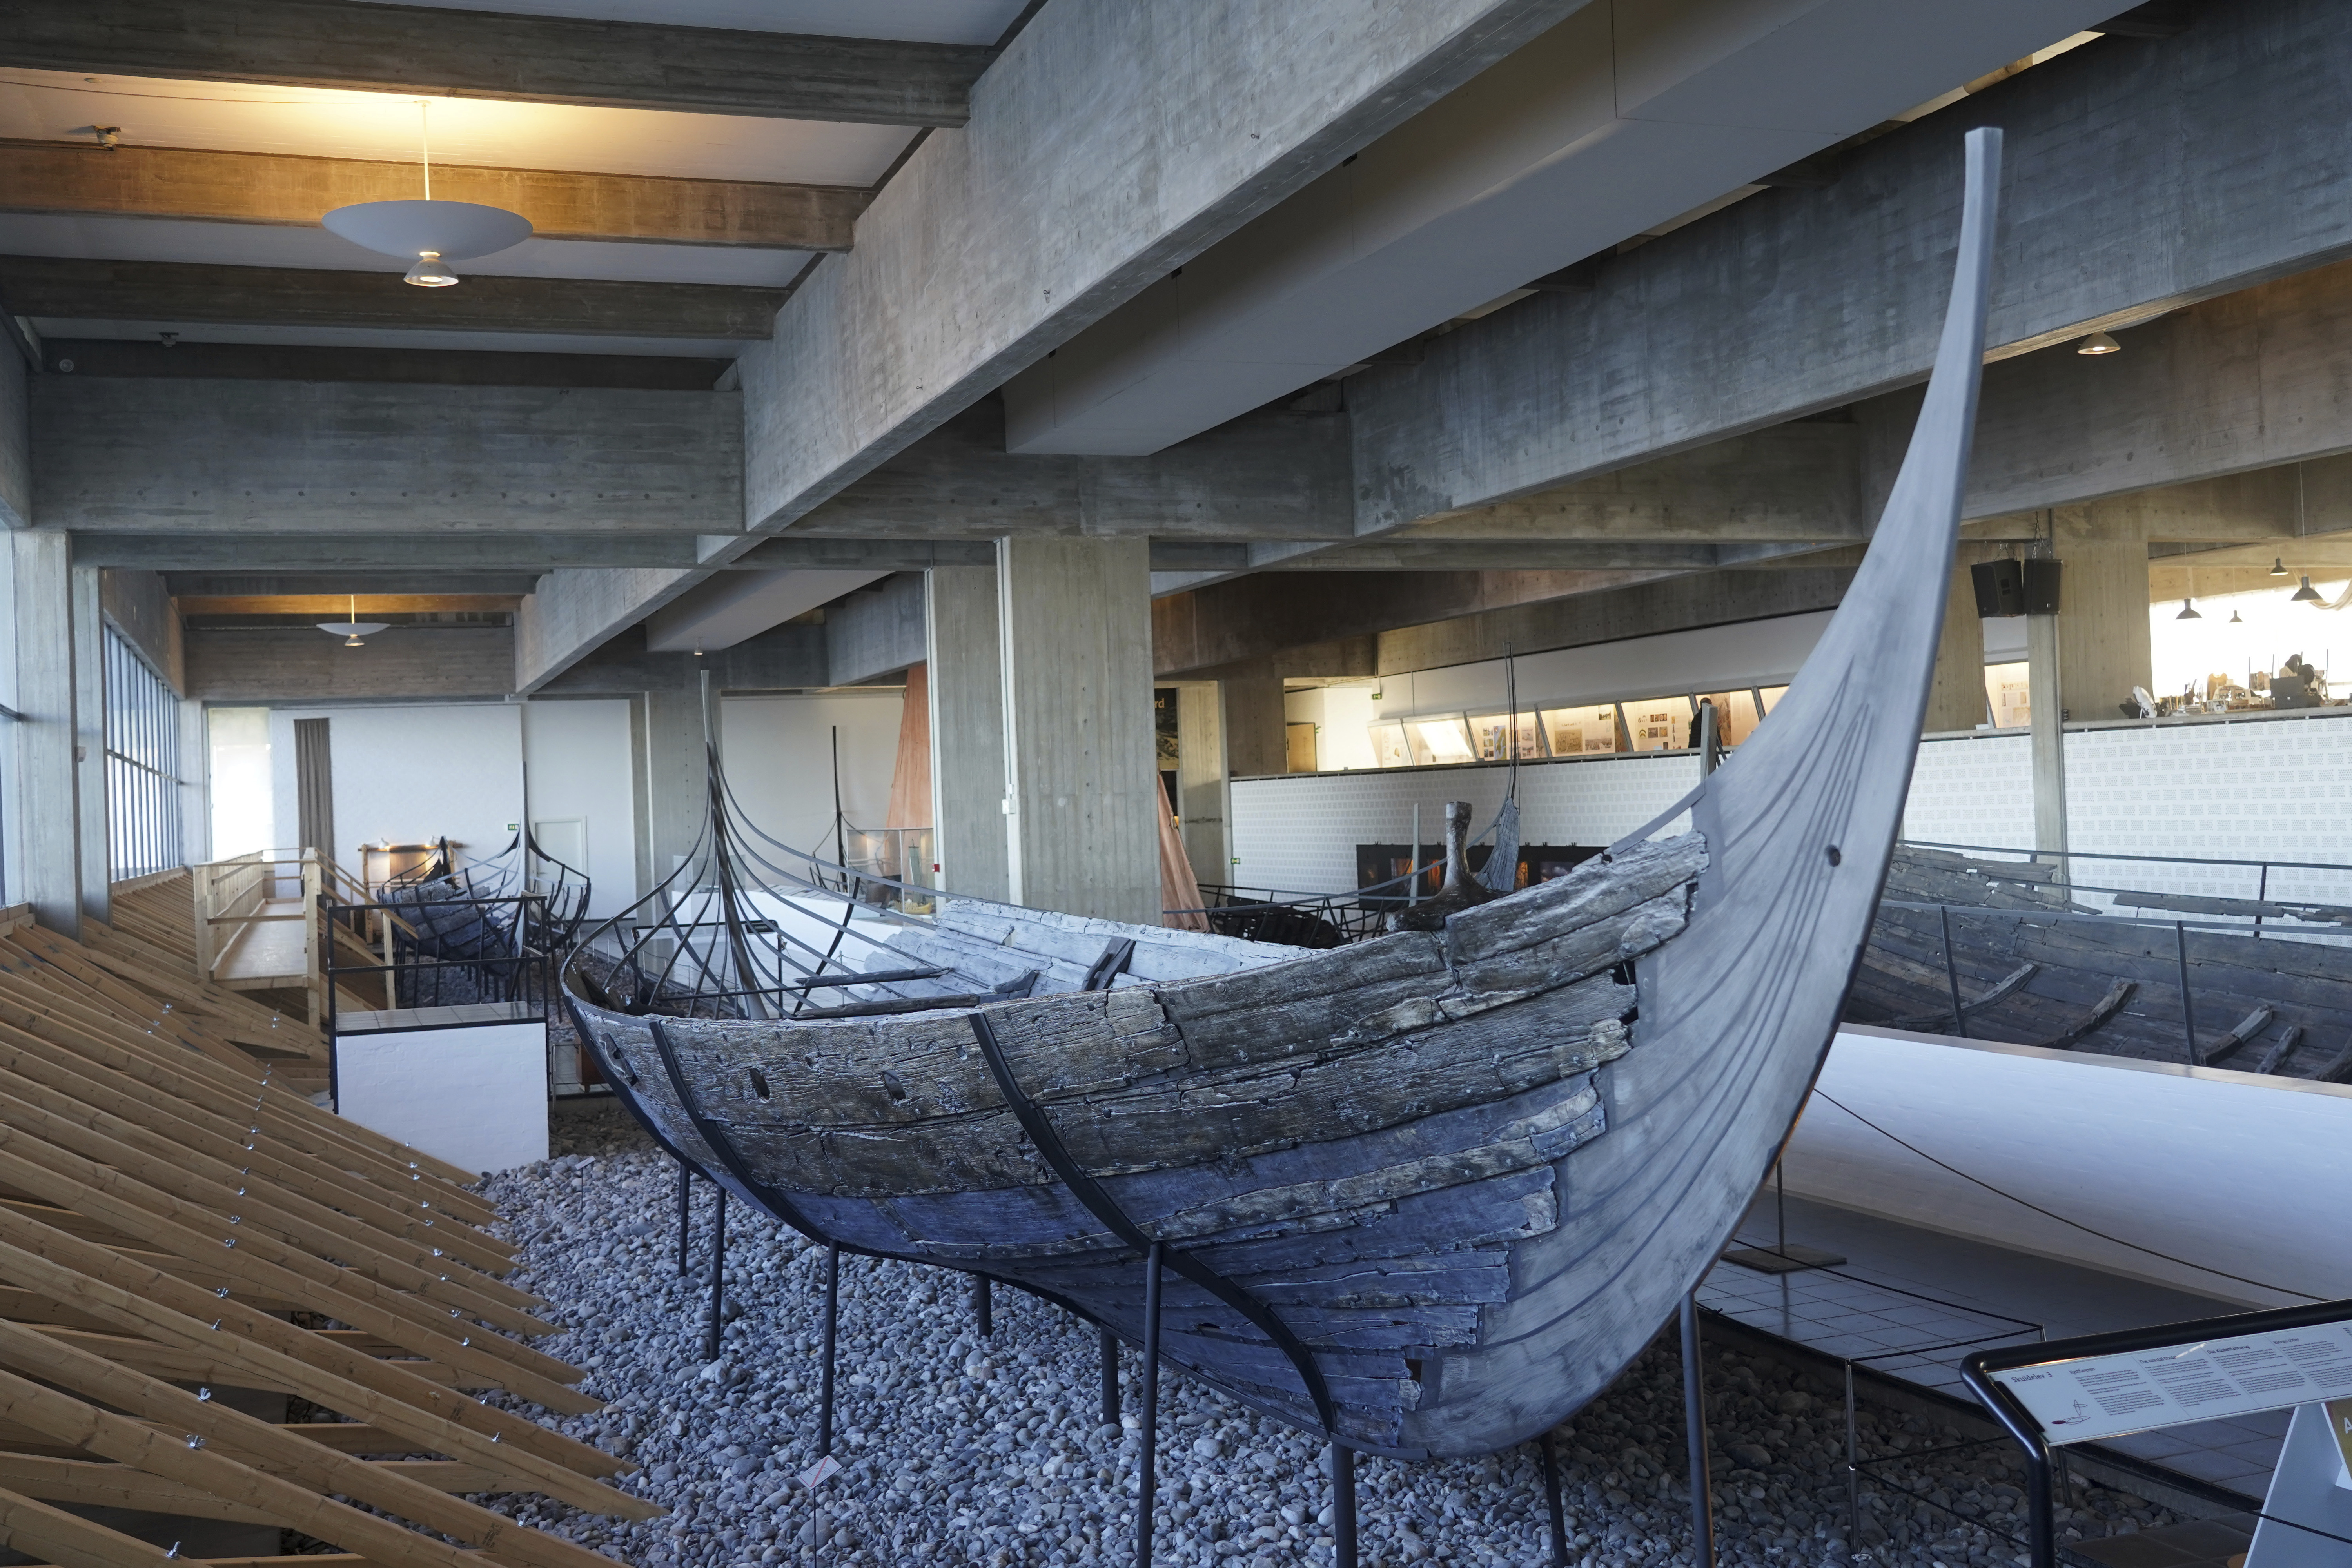 Un buque mercante costero vikingo de 14 metros del siglo XI, se encuentra en exhibición en el Museo de Barcos Vikingos. Roskilde, Dinamarca, lunes 17 de enero de 2022. (Foto AP/James Brooks)

